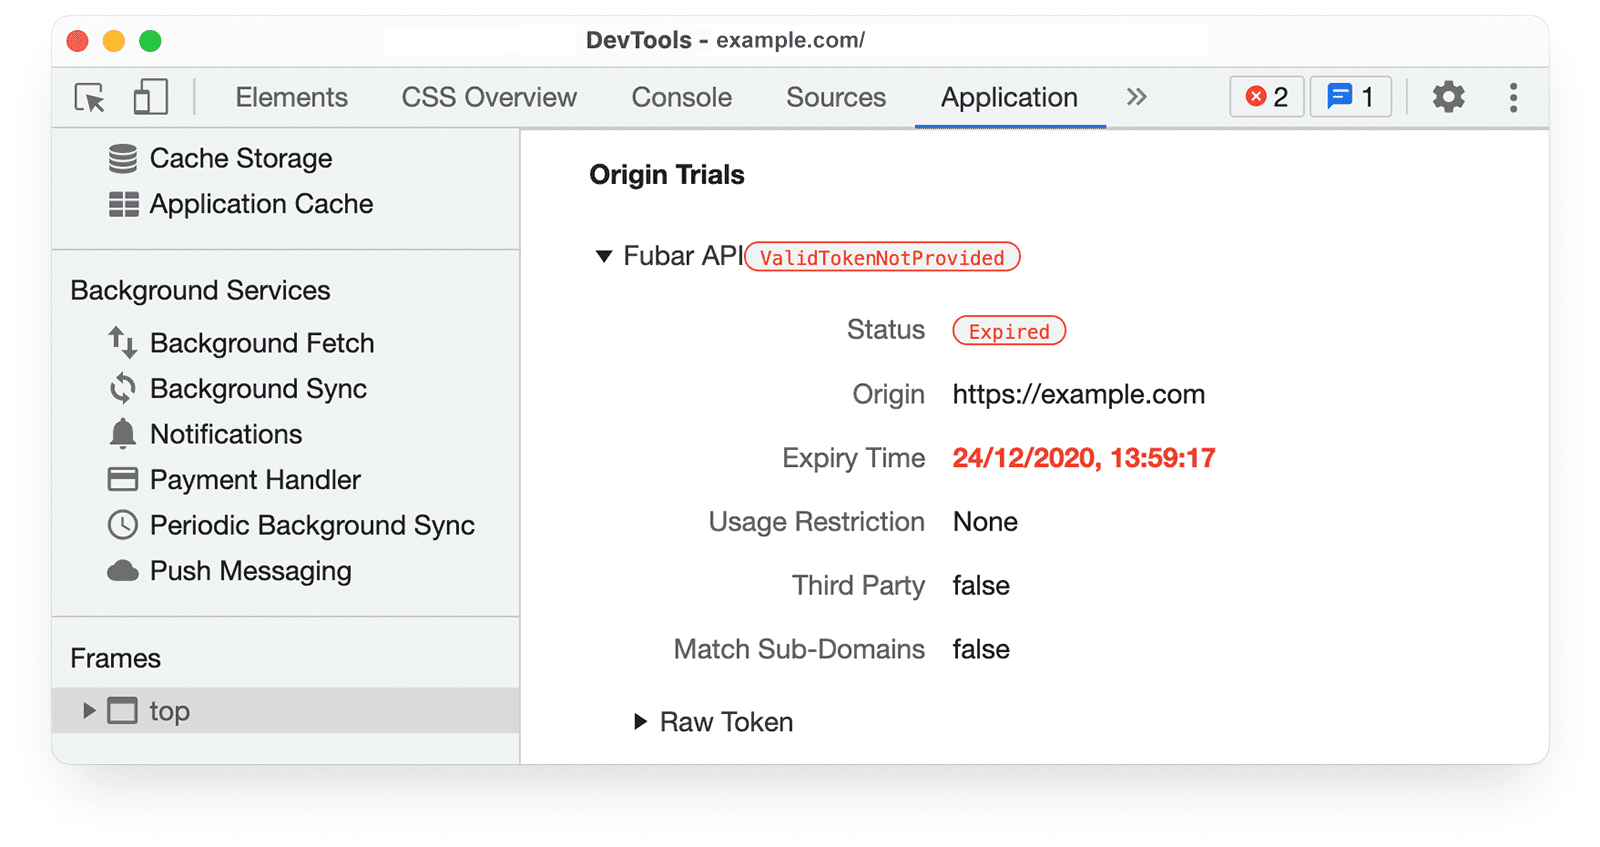 Informasi uji coba origin
Chrome DevTools di panel Application yang menampilkan token yang sudah tidak berlaku